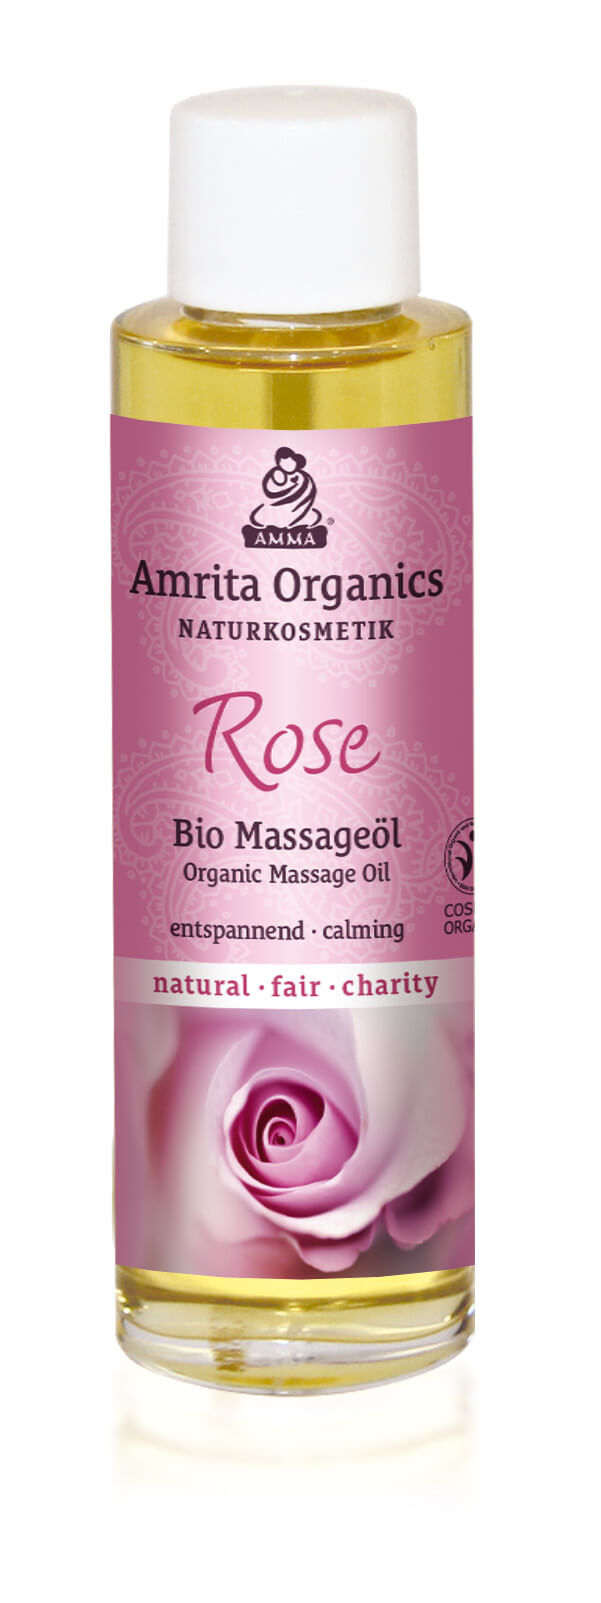 Massageöl Rose Bio